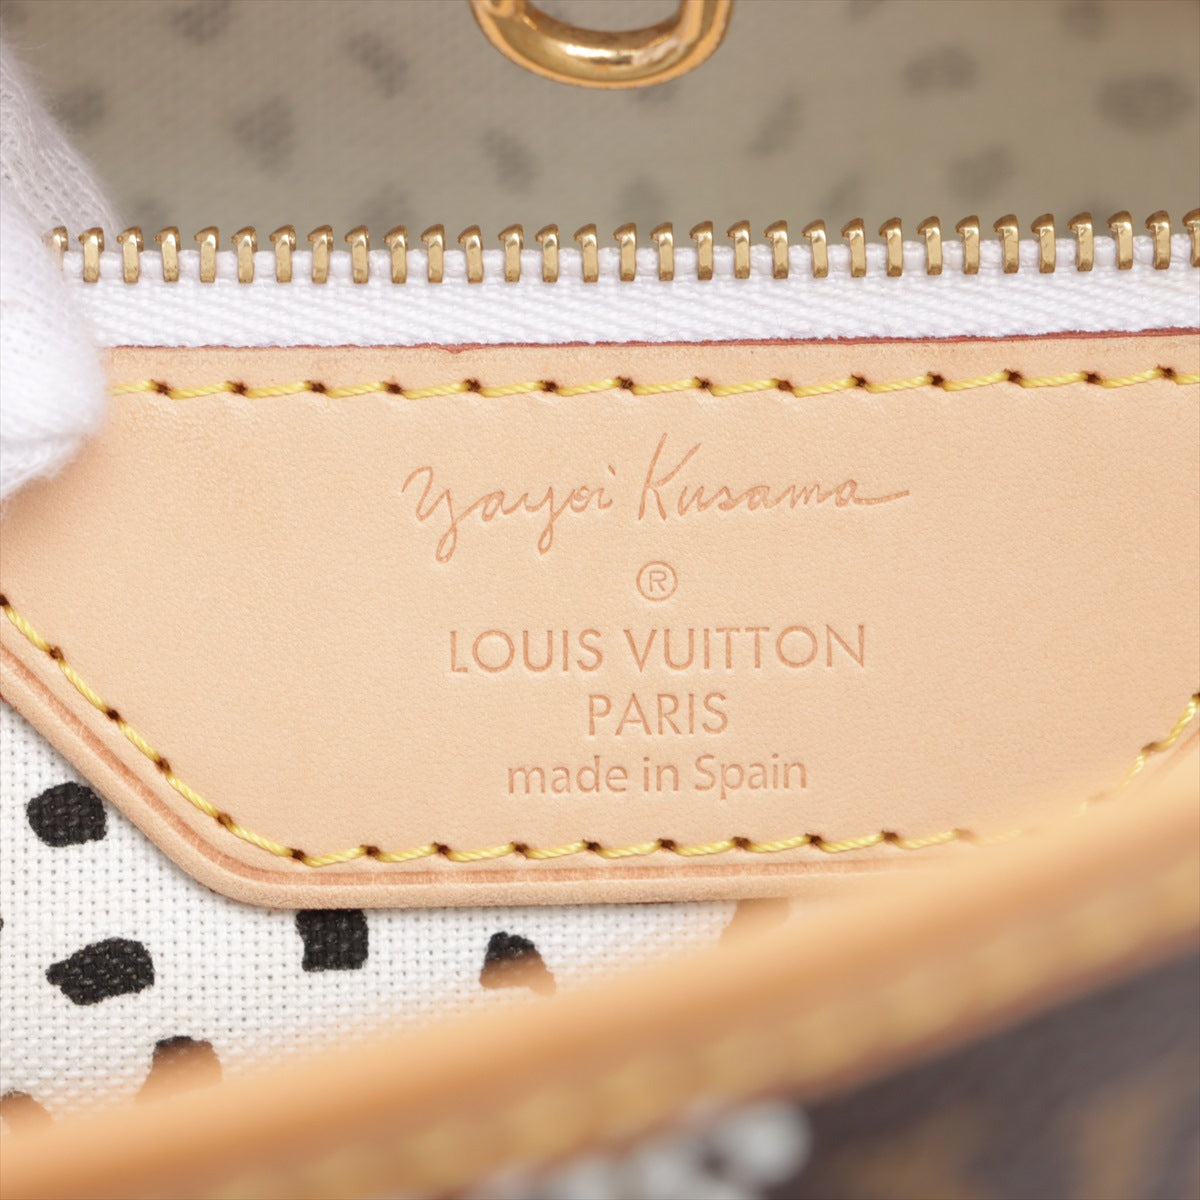 Louis Vuitton – Yayoi Kusama Fine Book 2012, WORK